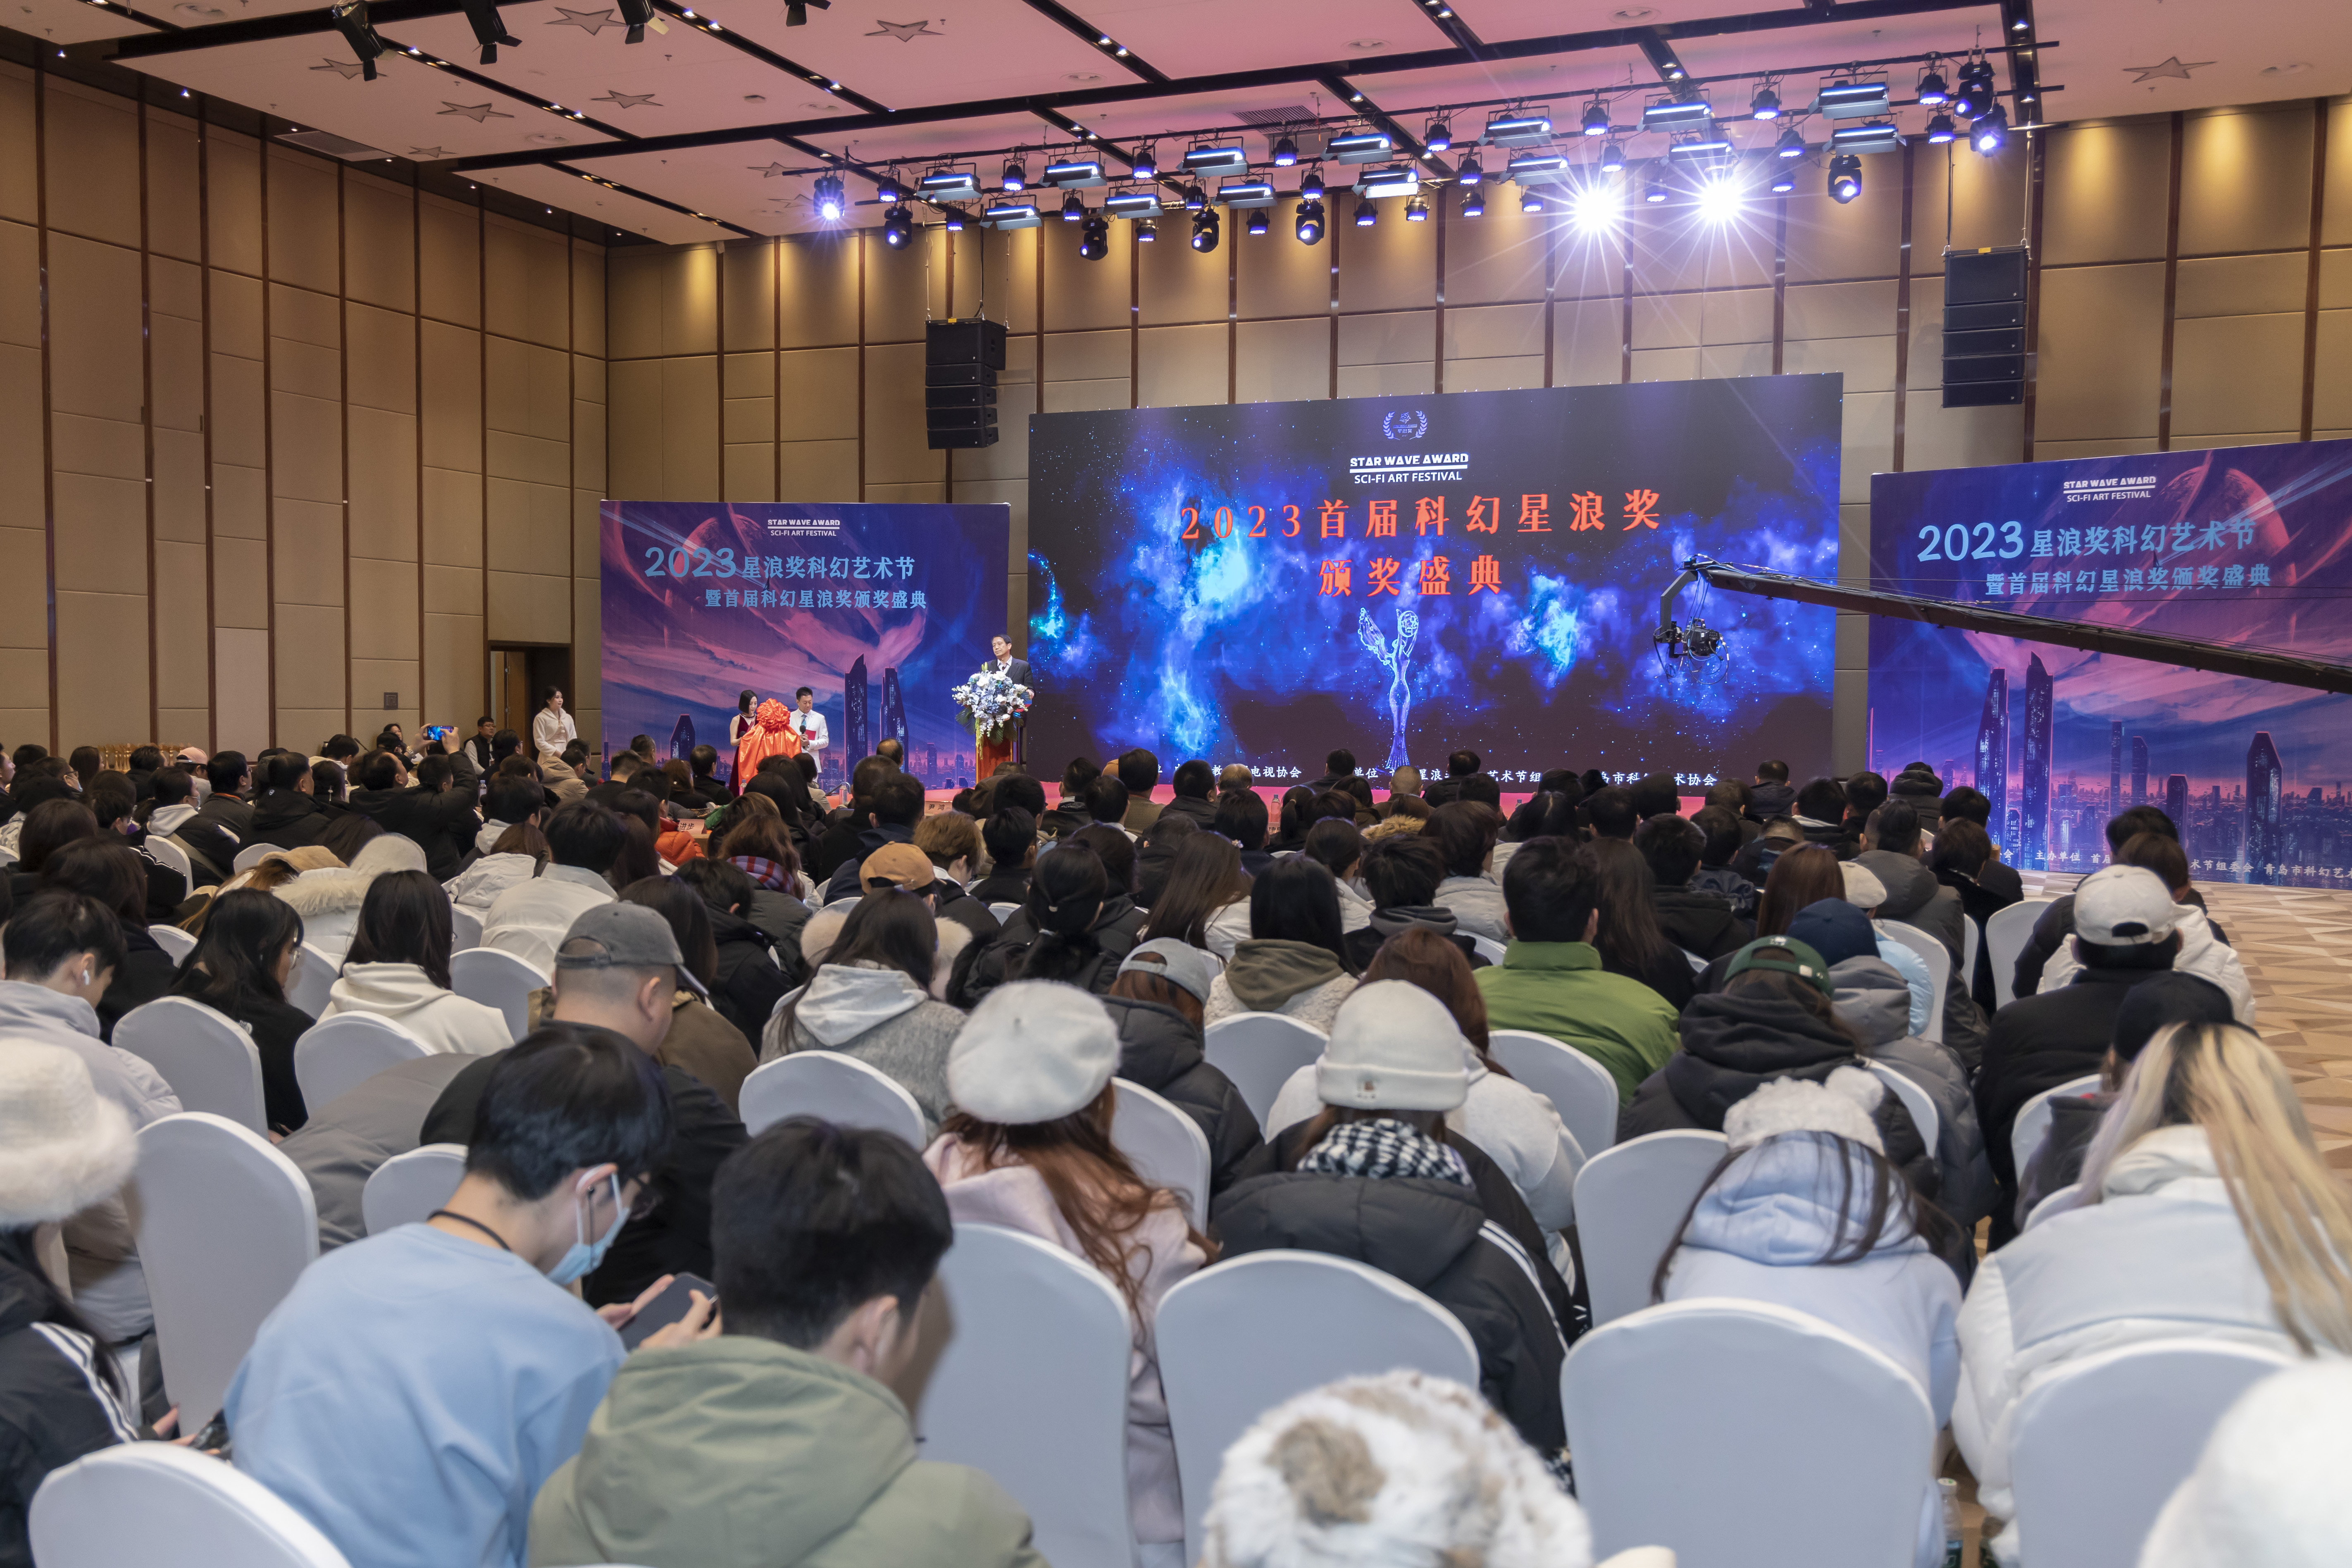 2023首届星浪奖科幻艺术节暨颁奖盛典在青岛成功举办